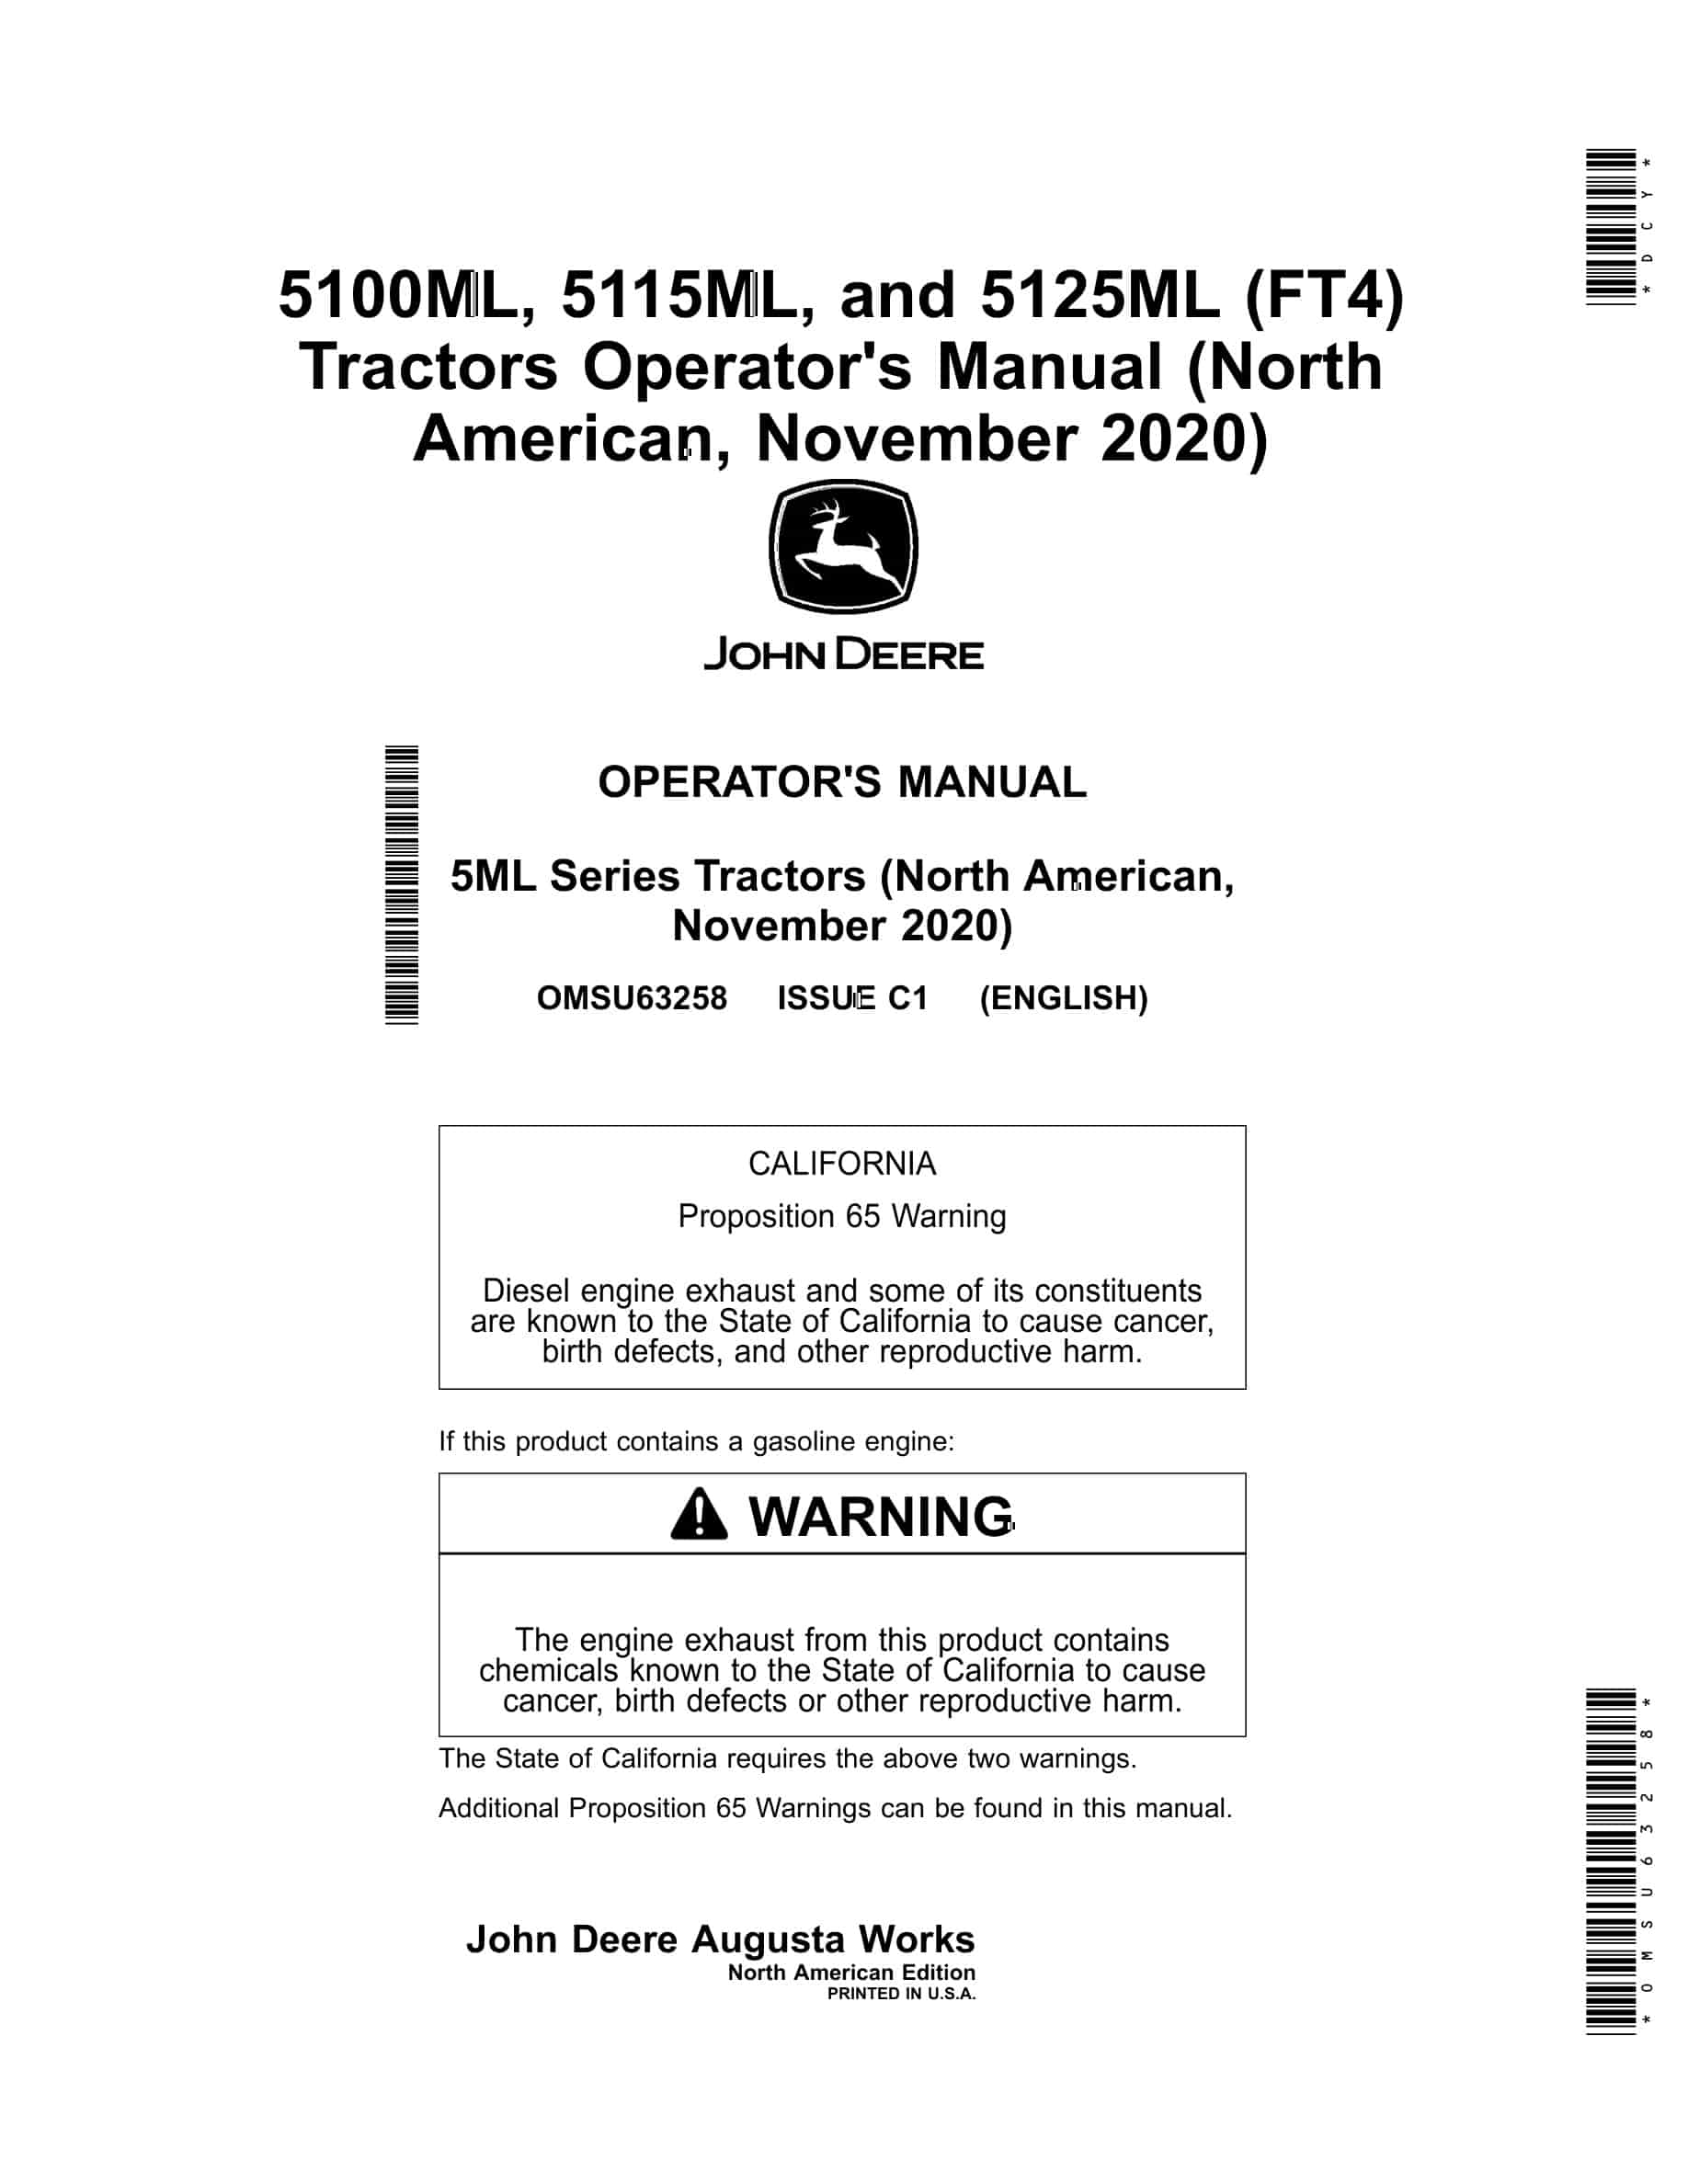 John Deere 5100ML, 5115ML, and 5125ML (FT4) Tractor Operator Manual OMSU63258-1